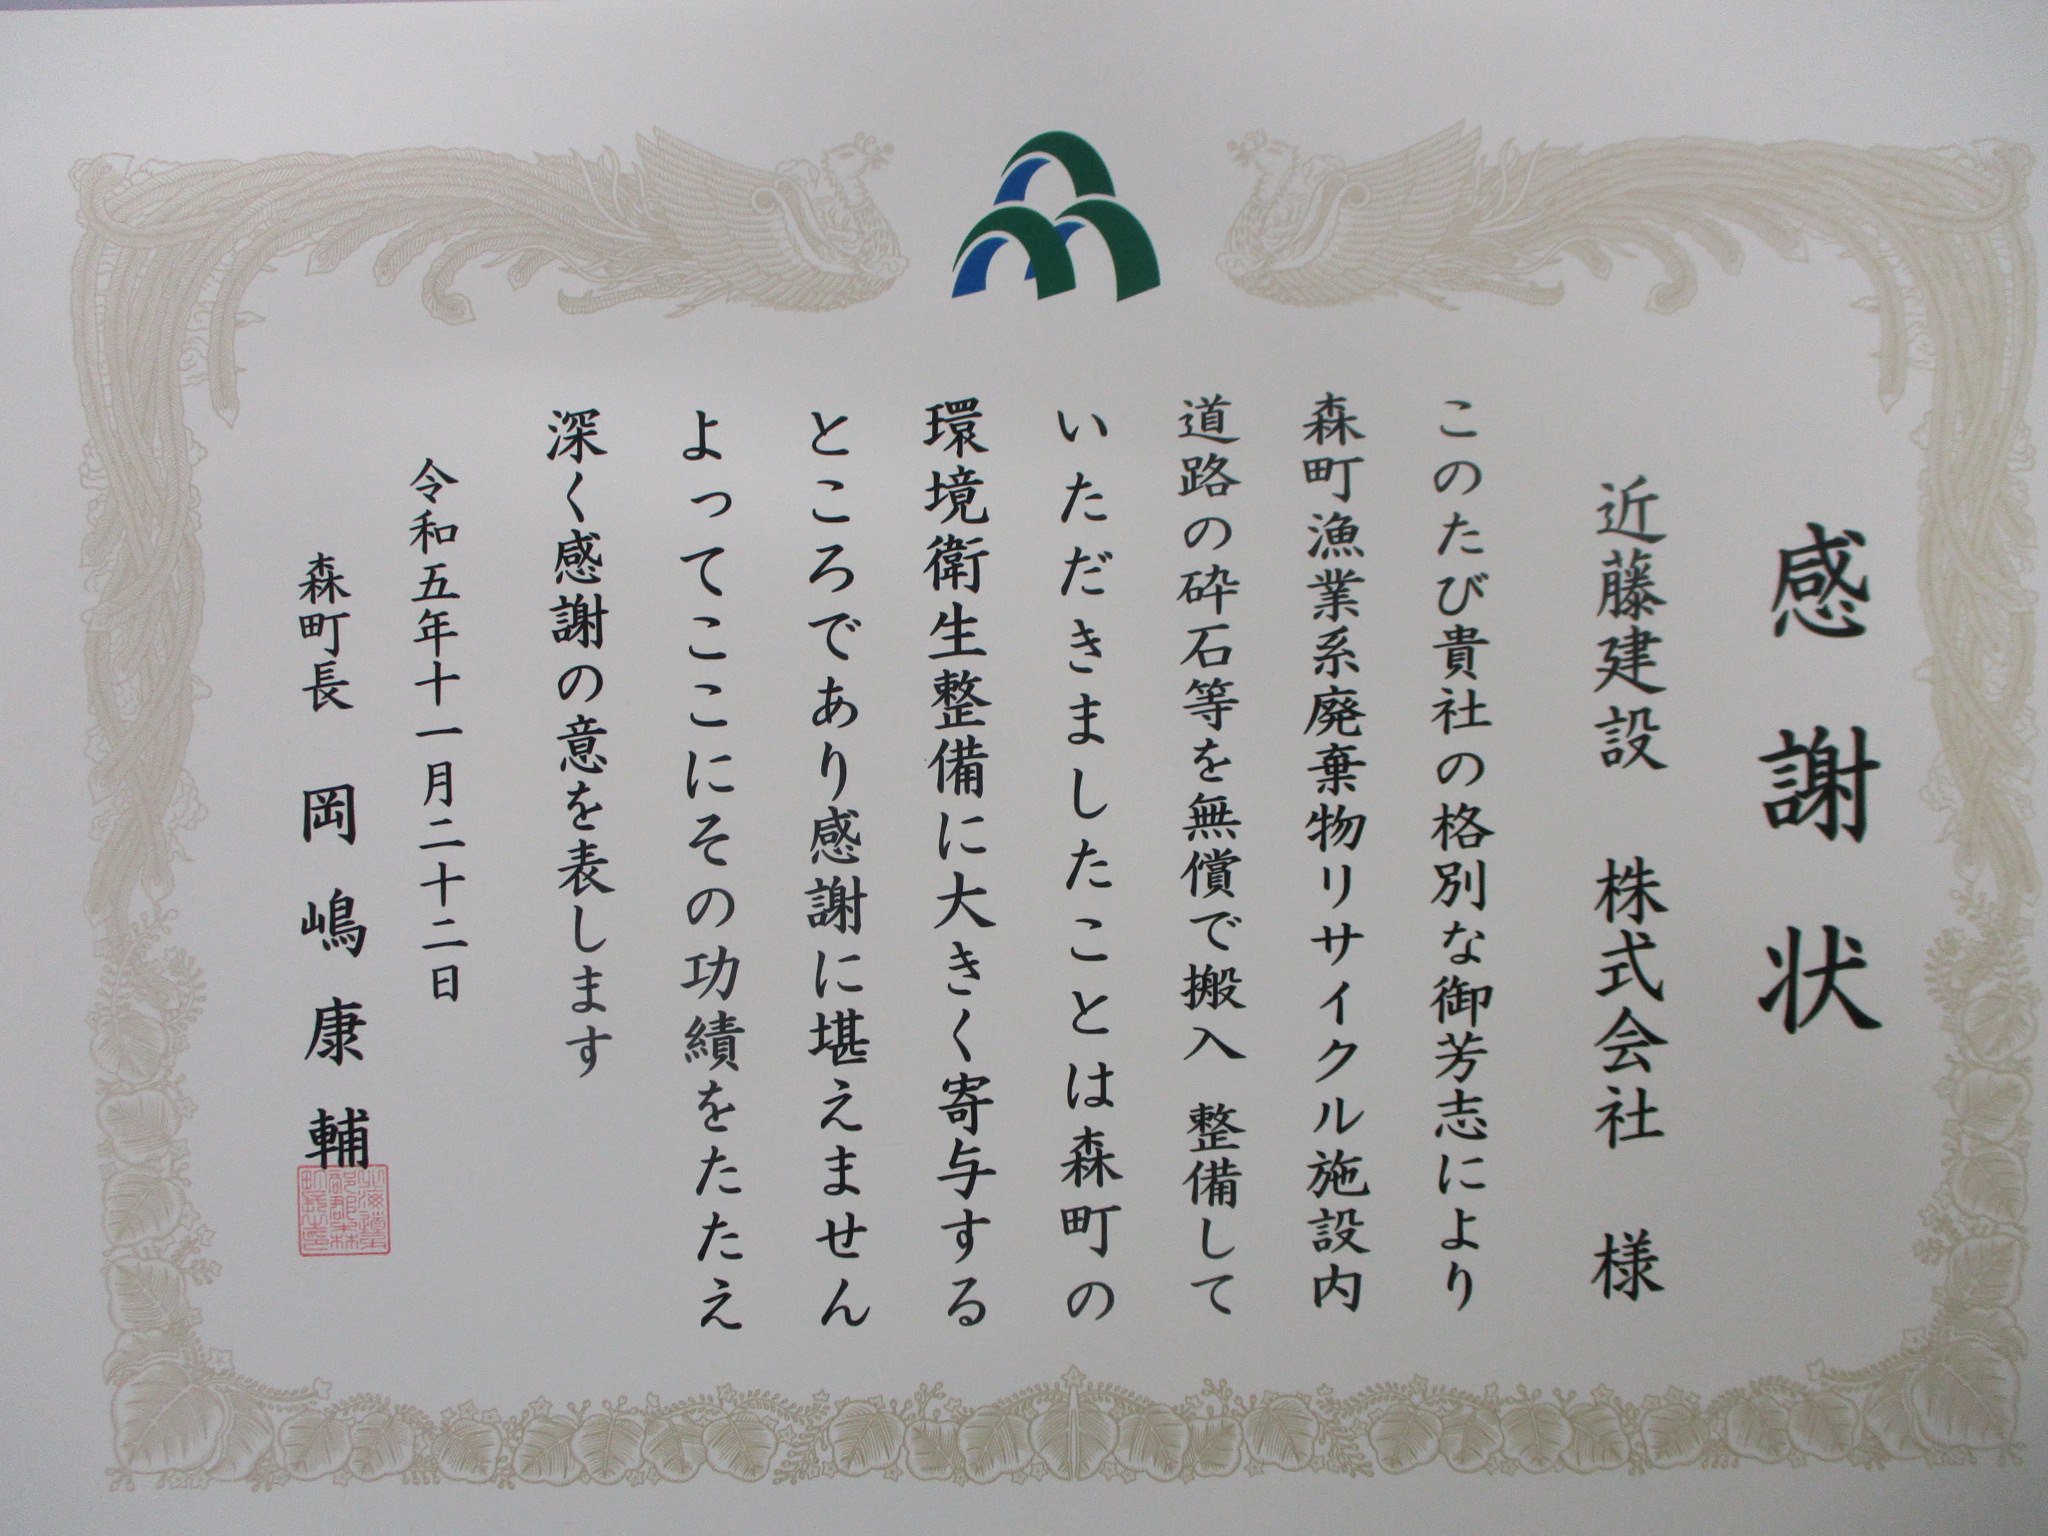 令和5年11月22日(水)森町より感謝状を頂きました。